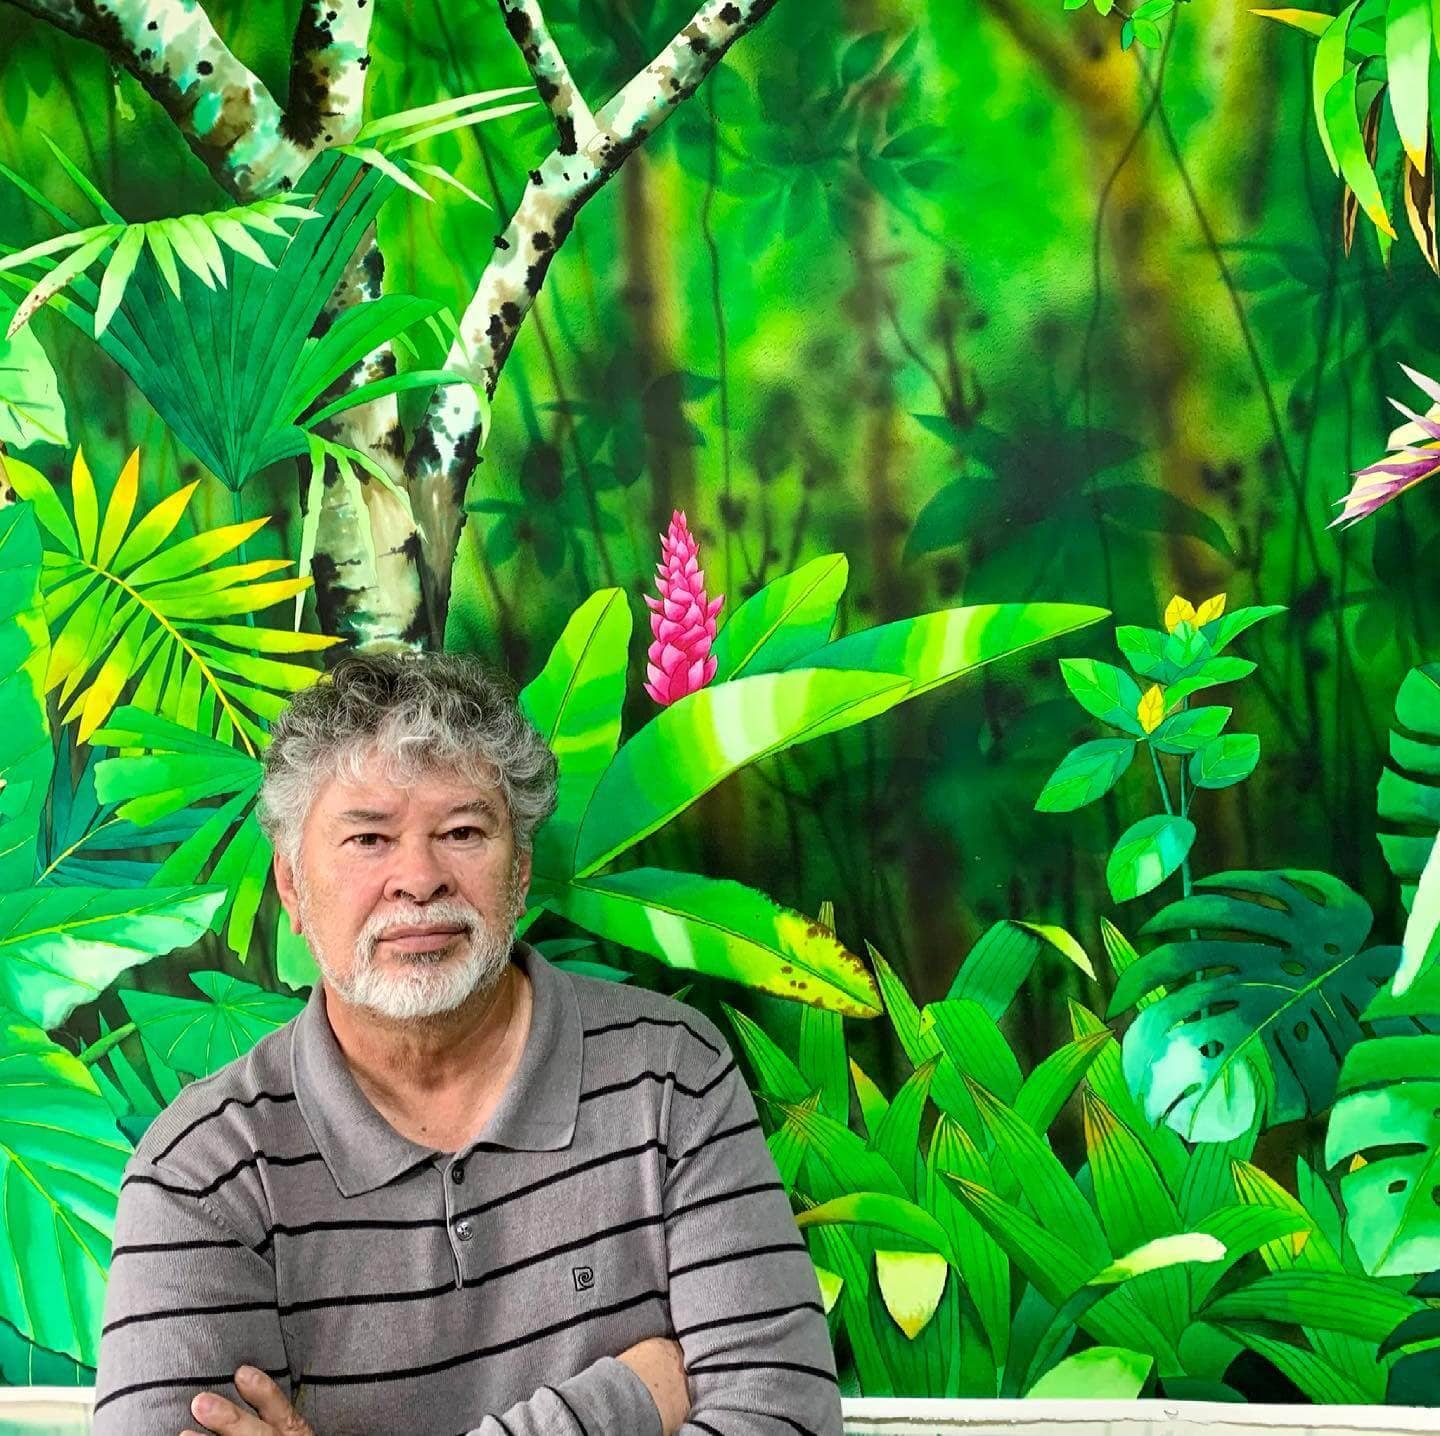 La Amazonía desde la acuarela: “Colombia Amazónica”, la nueva exposición del maestro César Bertel que llega al Museo de Arte Moderno de Bucaramanga – Revista Enredarte